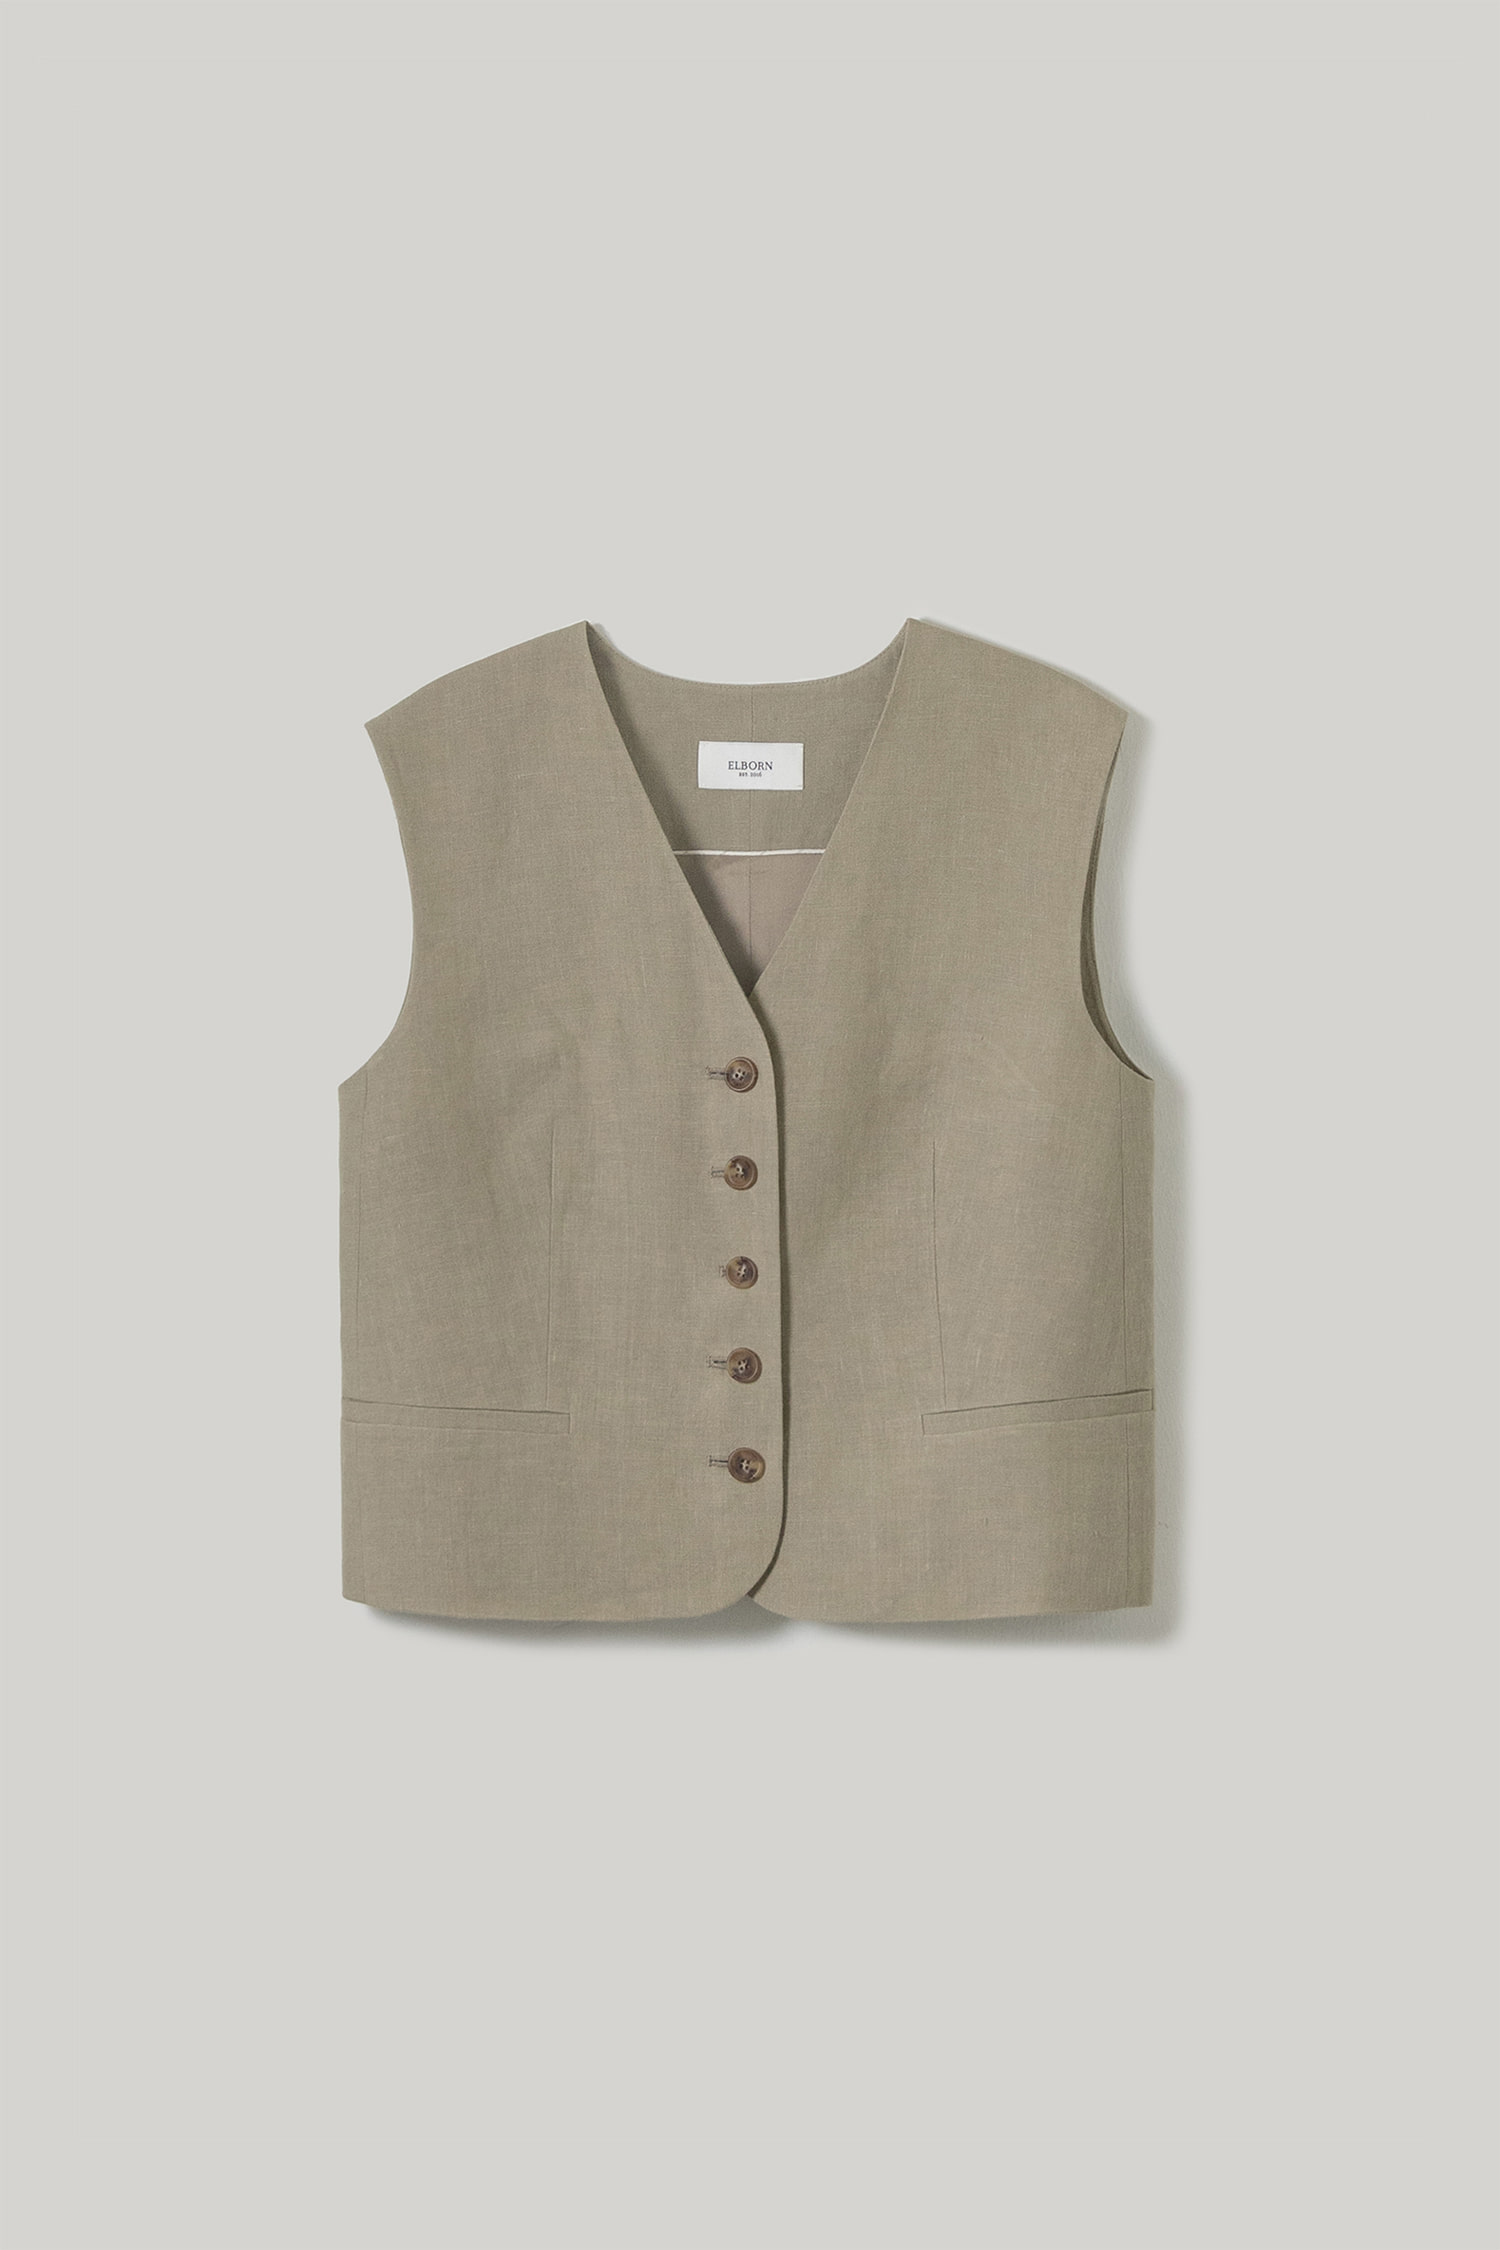 Jaden Homme Vest(Moss beige)